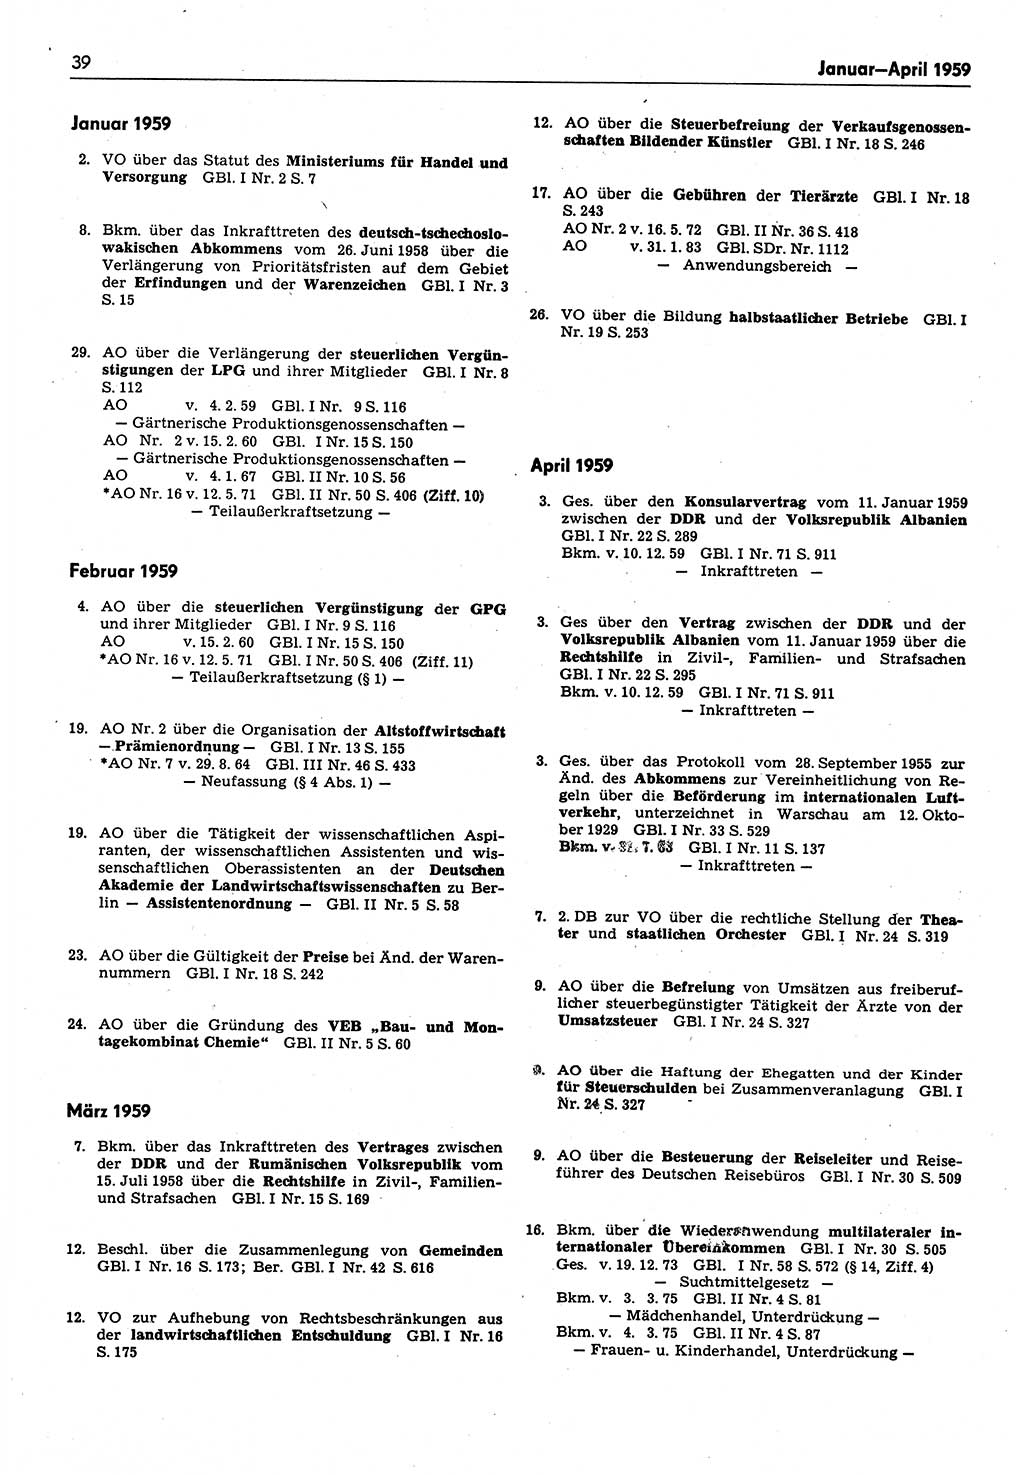 Das geltende Recht der Deutschen Demokratischen Republik (DDR) 1949-1988, Seite 39 (Gelt. R. DDR 1949-1988, S. 39)